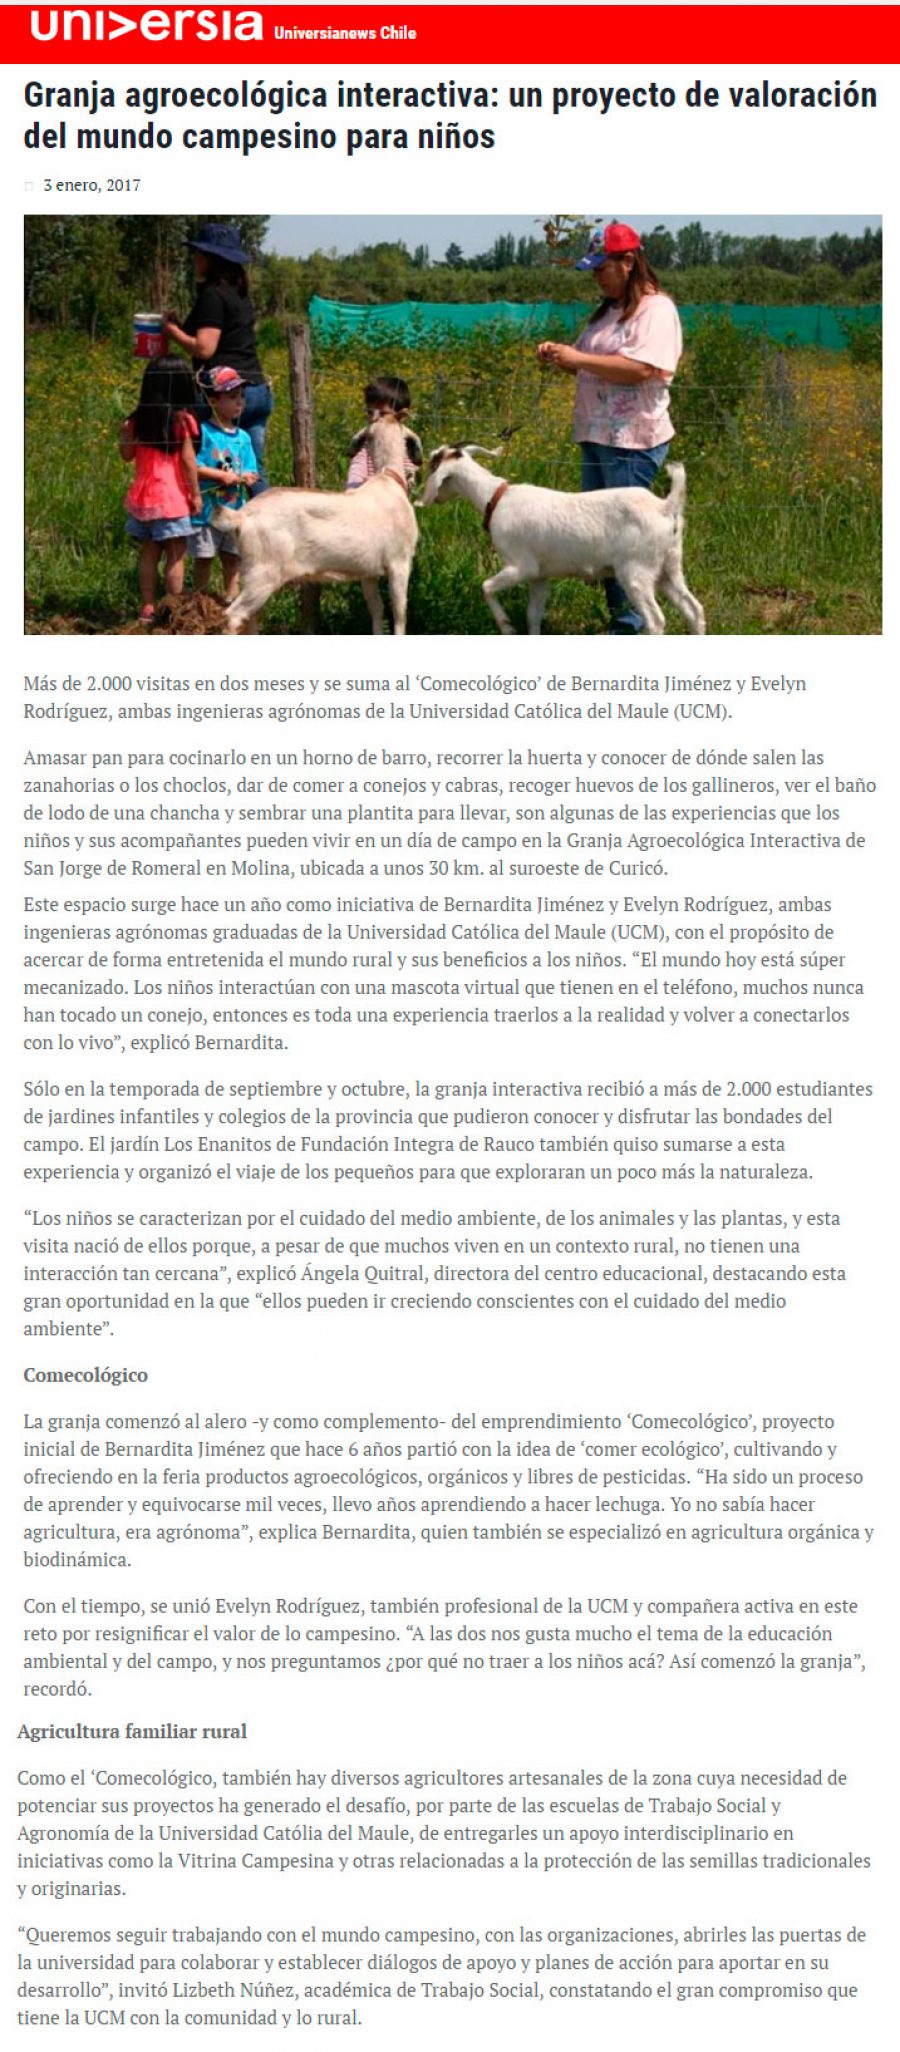 03 de enero 2017 en Universia: “Granja agroecológica interactiva: un proyecto de valoración del mundo campesino para niños”